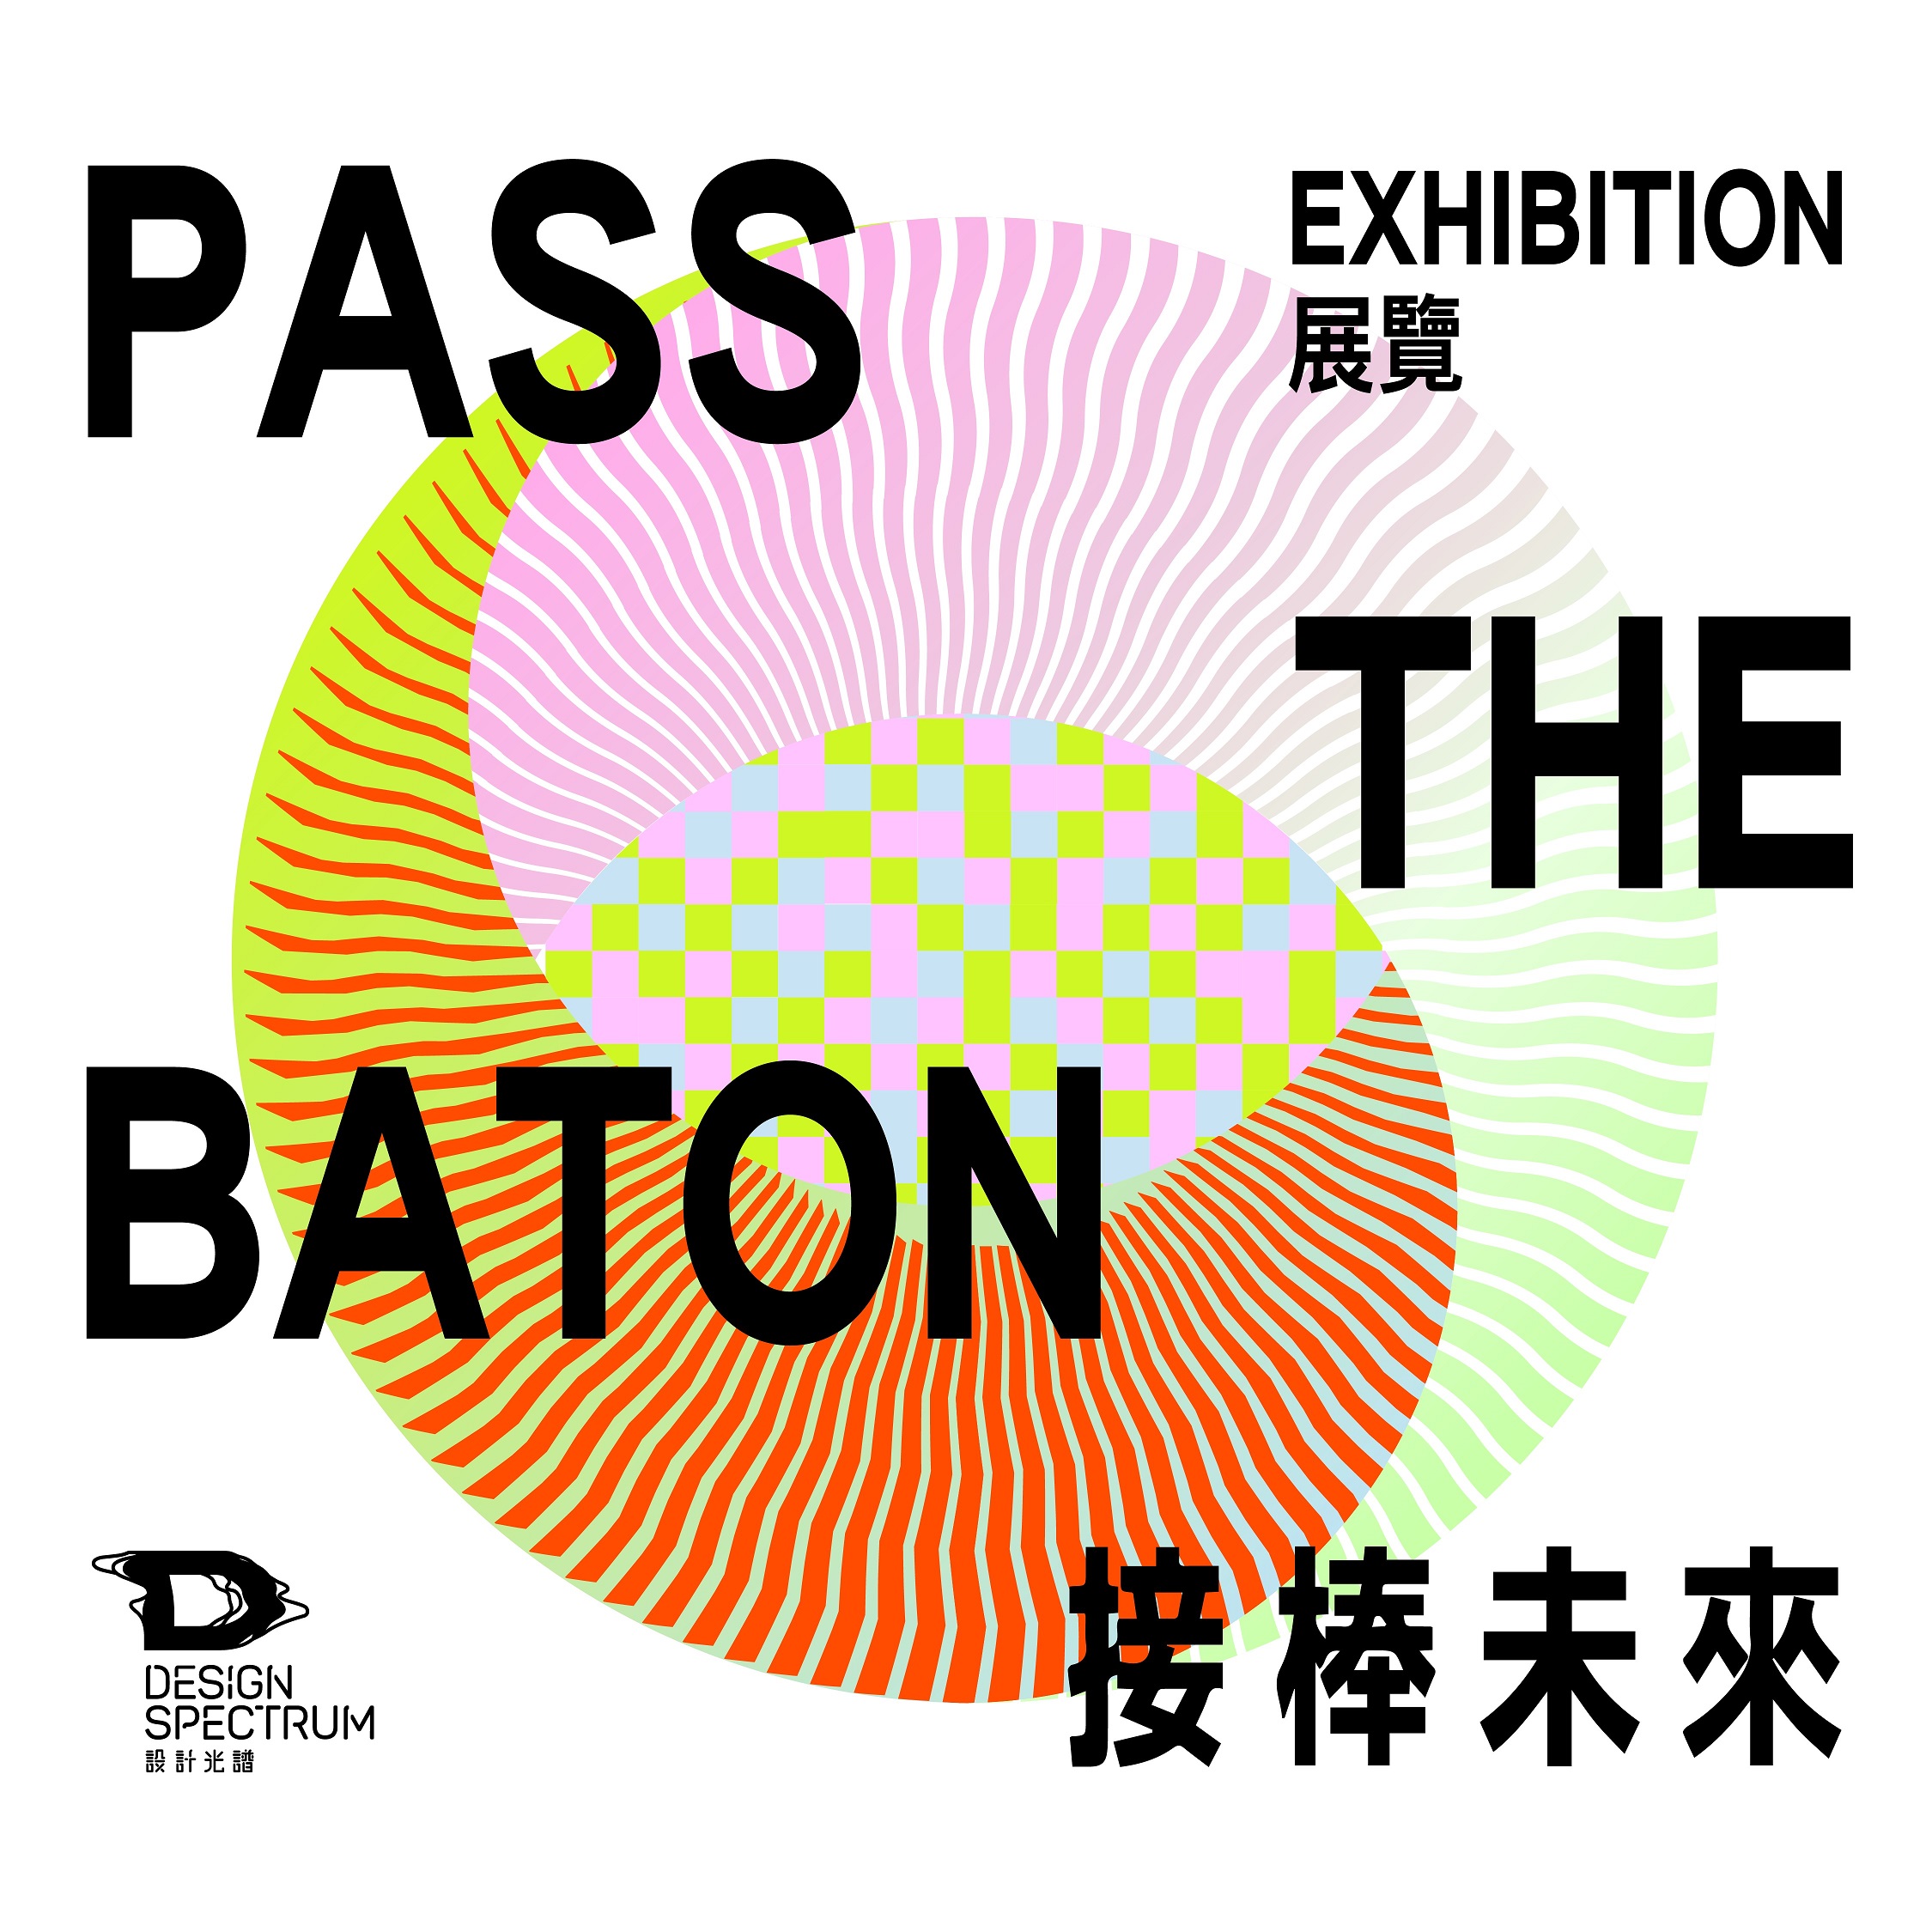 香港設計中心「設計光譜」呈獻：「接棒未來」展覽    展覽第一部分「過界」 揭開序幕